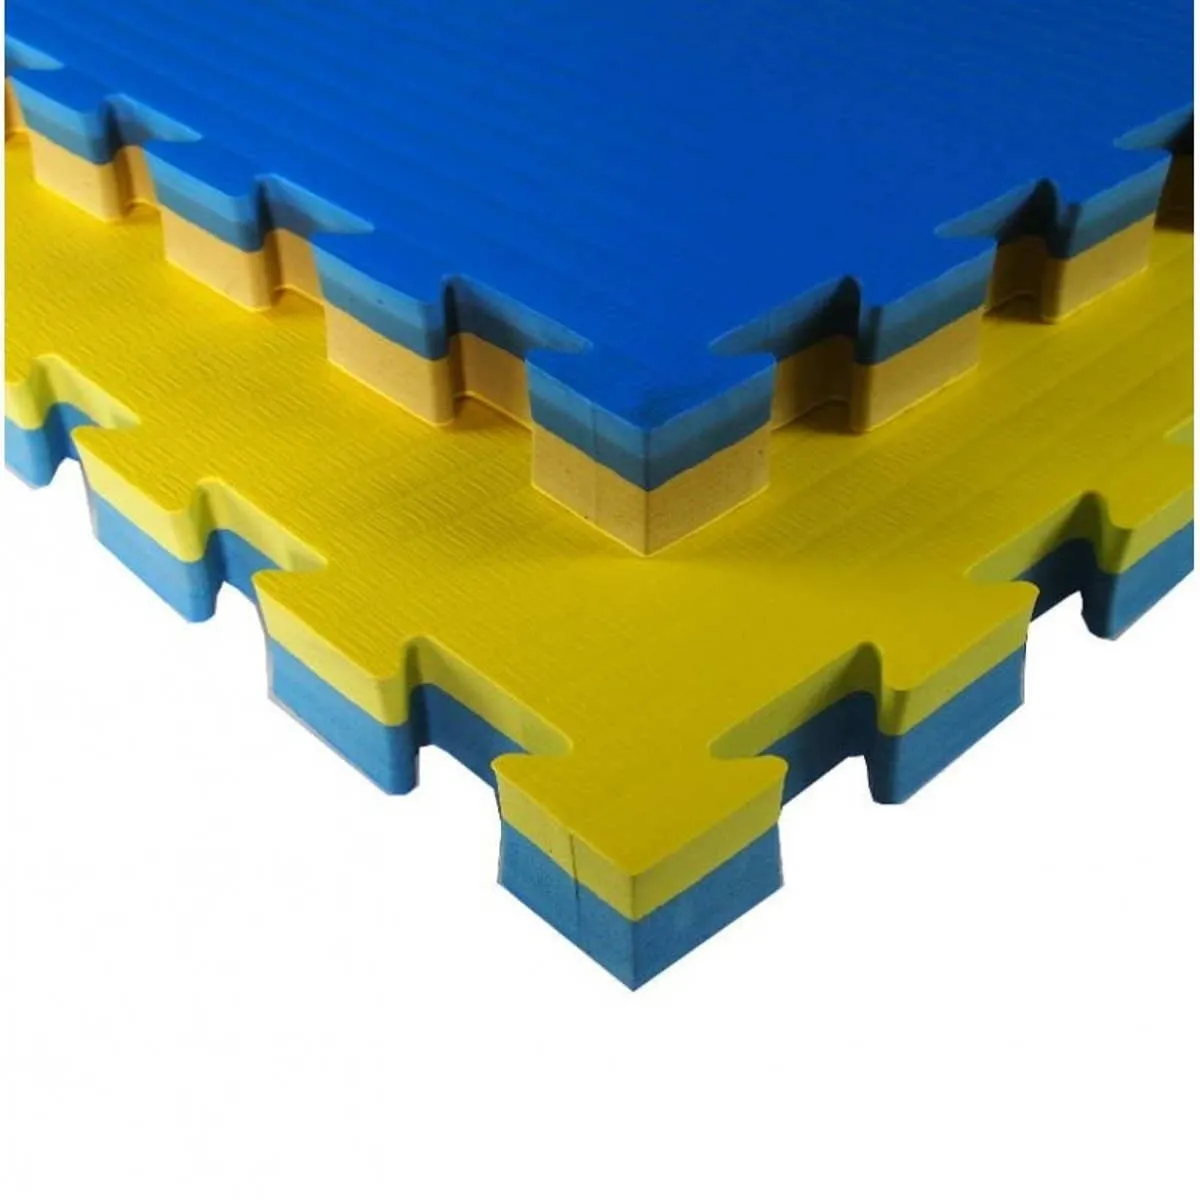 Tatami mat JJ40X yellow/blue 100 cm x 100 cm x 4 cm